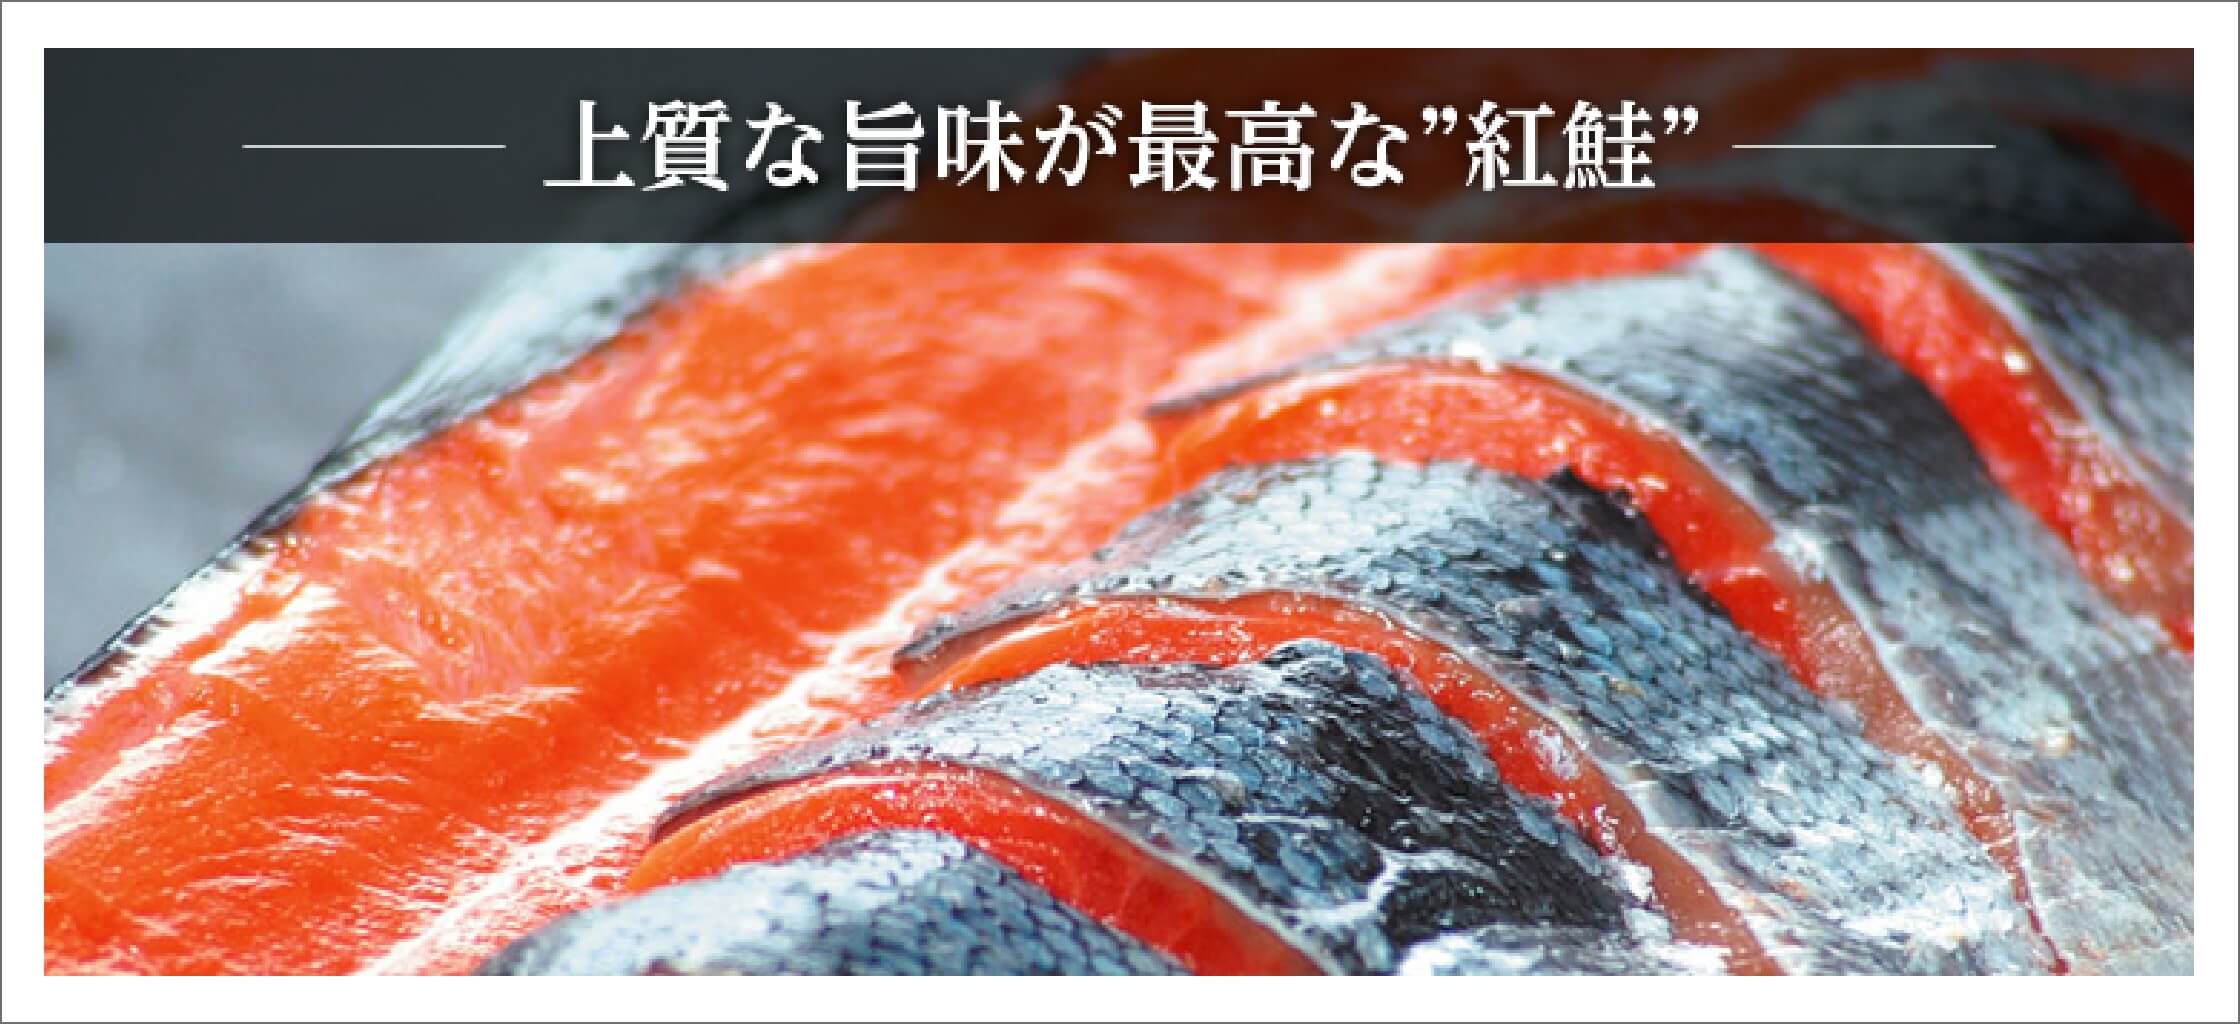 上質な旨味が最高な”紅鮭”